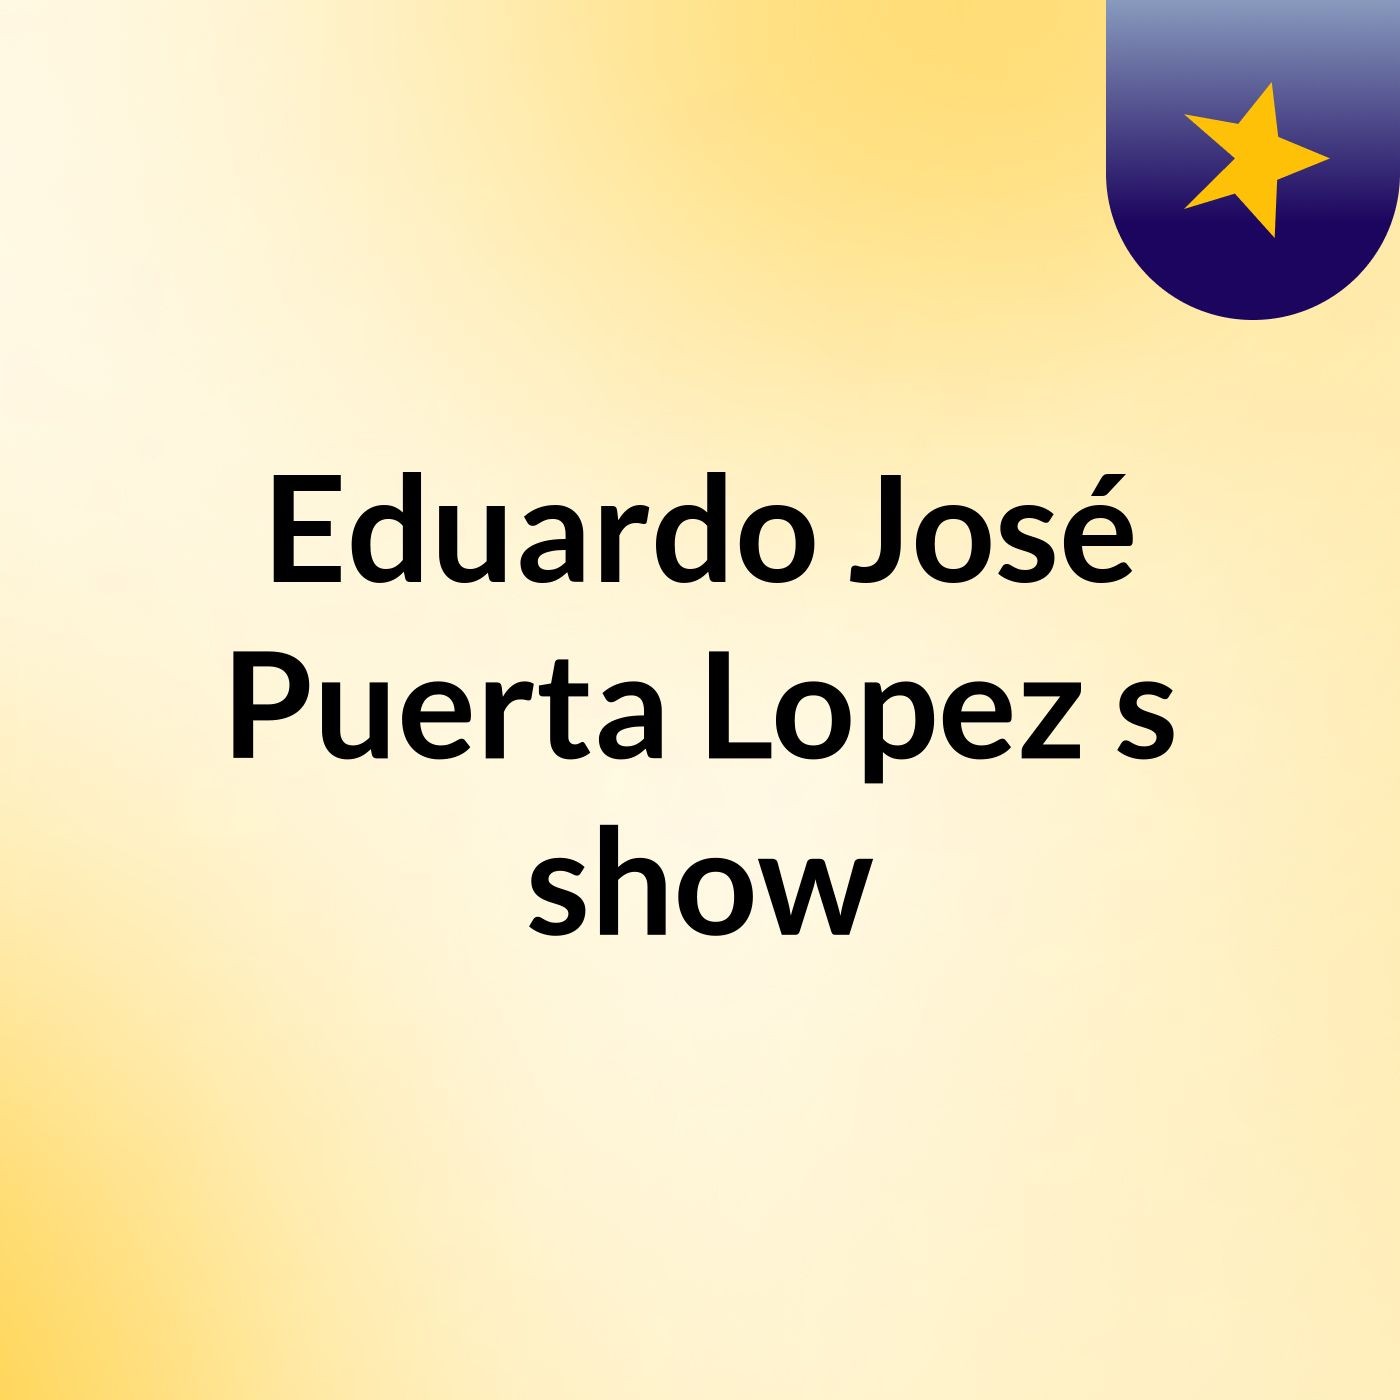 Eduardo José Puerta Lopez's show